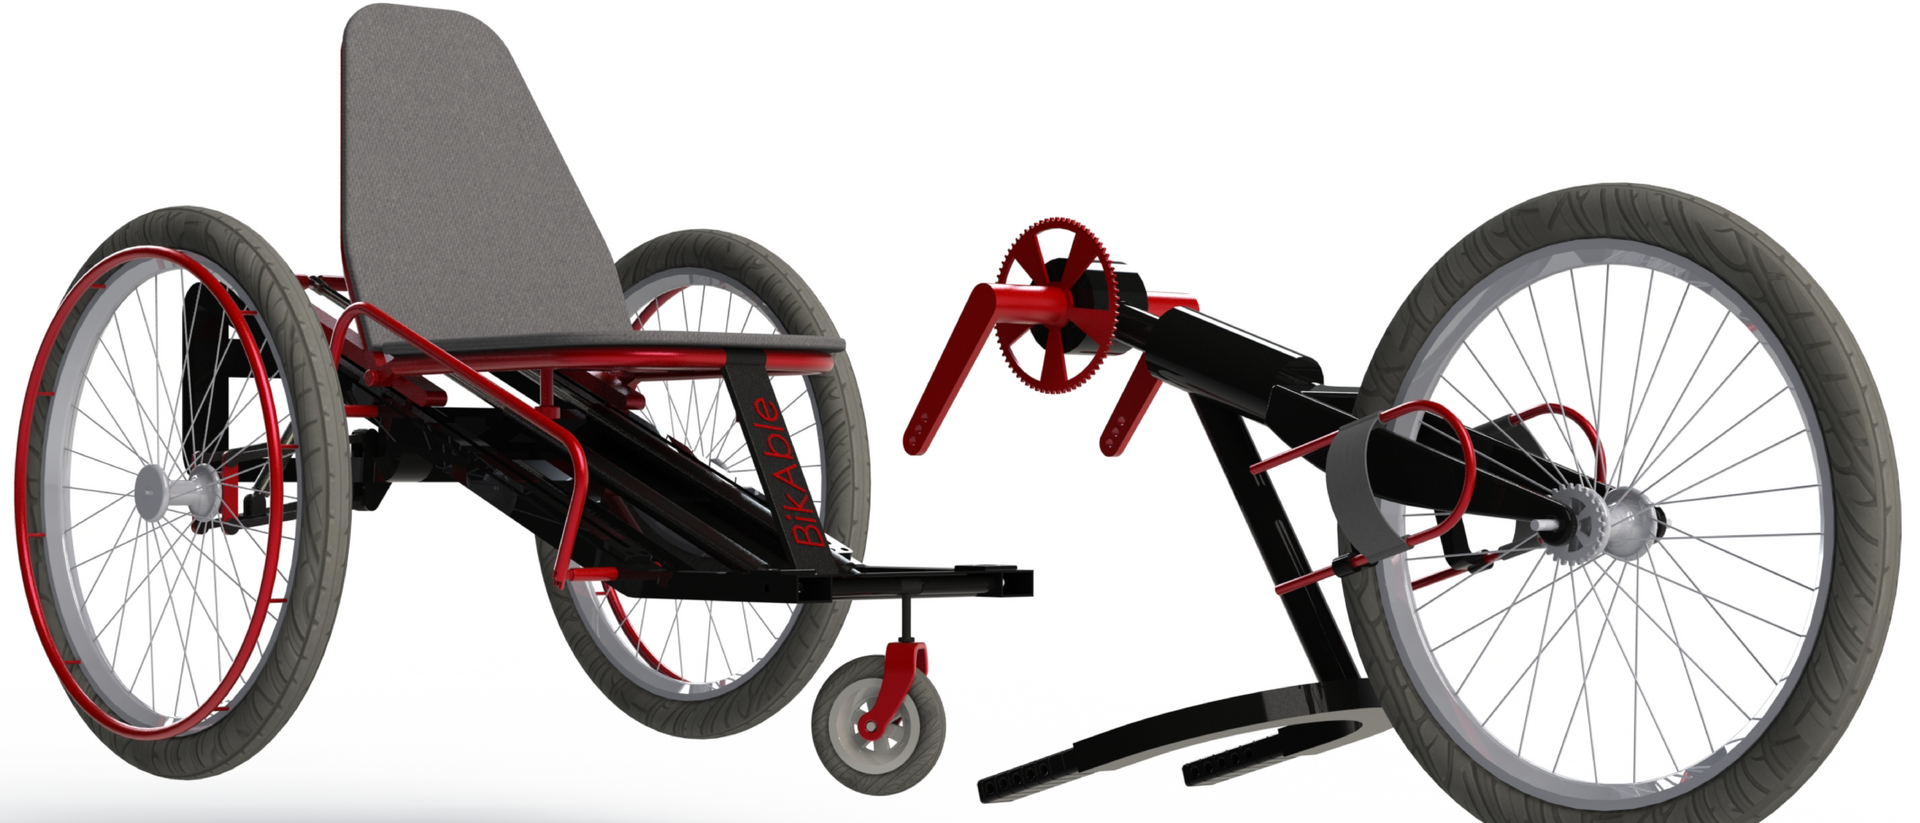 Das neue Design verbindet die Funktionen Sportgerät und Rollstuhl.